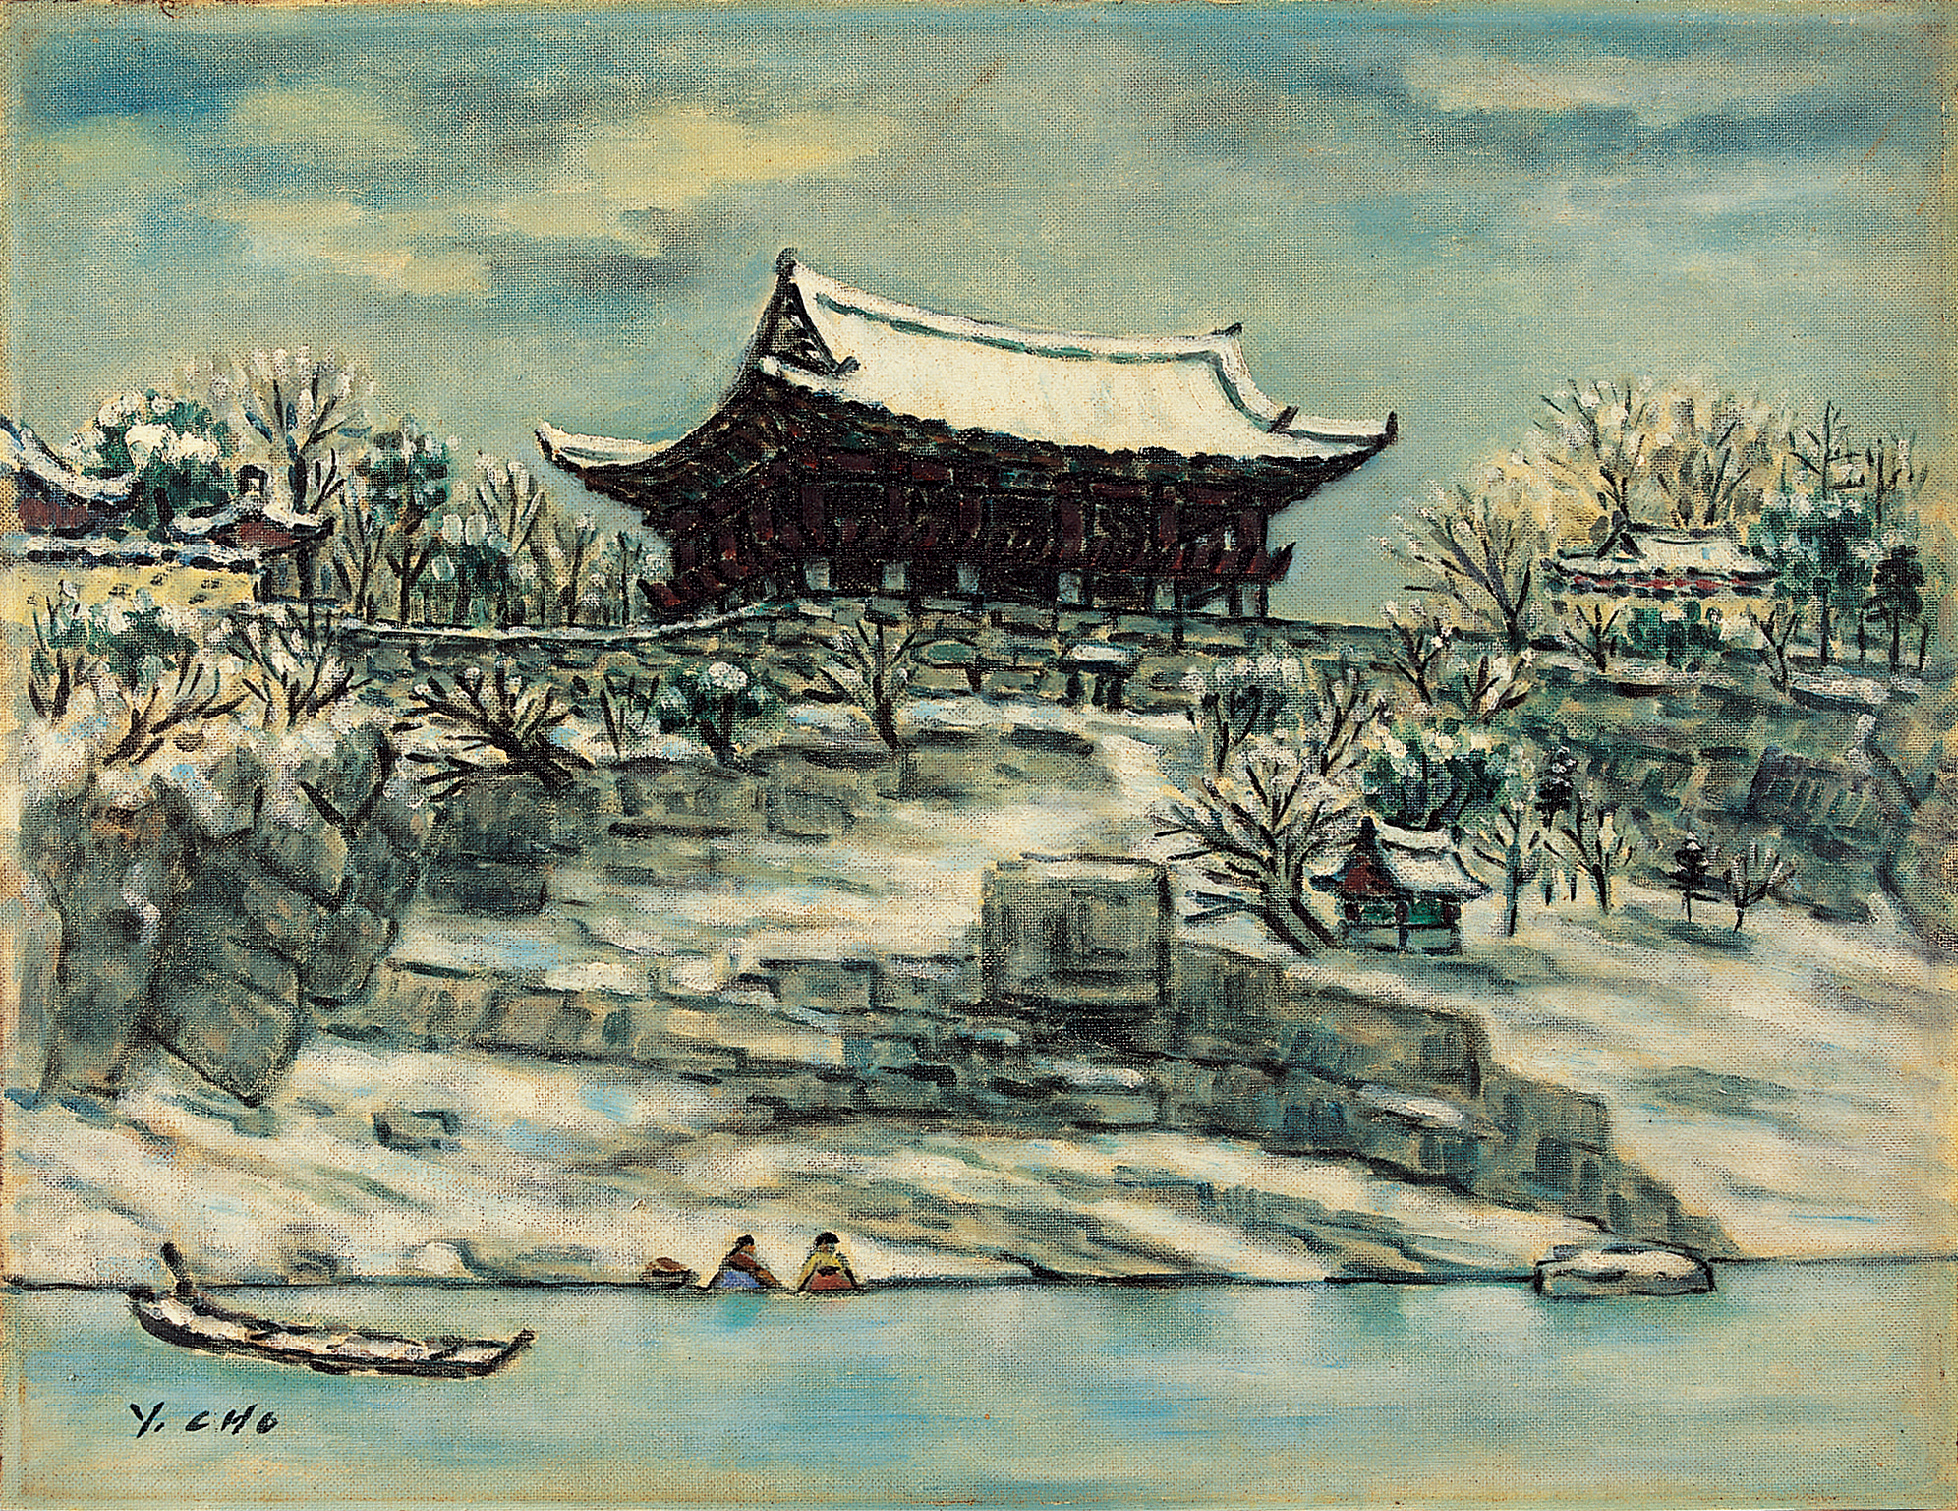 조영제,촉석루-겨울,1950년대,캔버스에유채,48×63.5cm복사.jpg